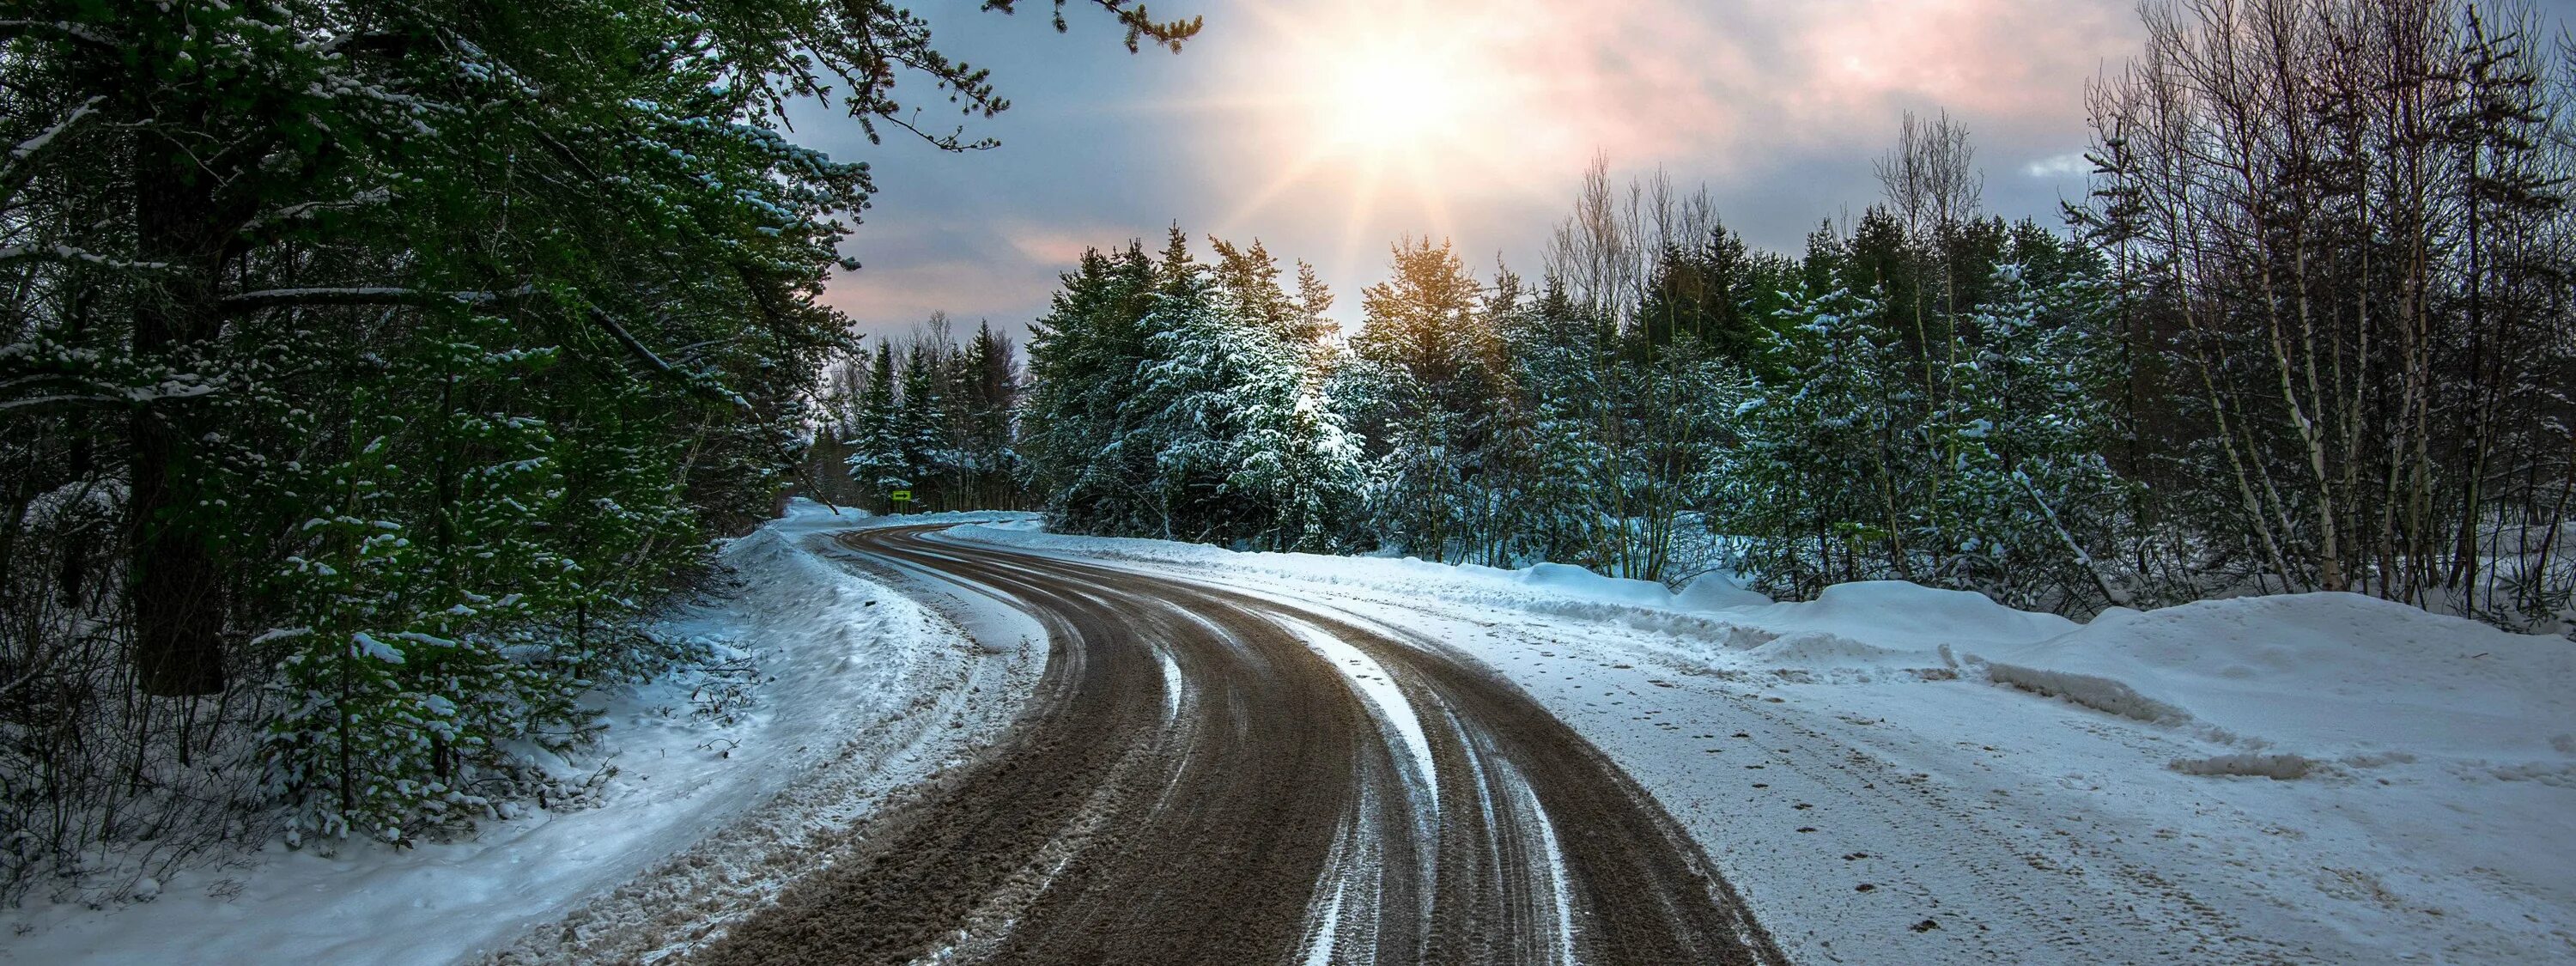 На дороге снег лежит. Заснеженная дорога. Красивые дороги. Зимняя дорога в лесу. Заснеженная дорога в лесу.